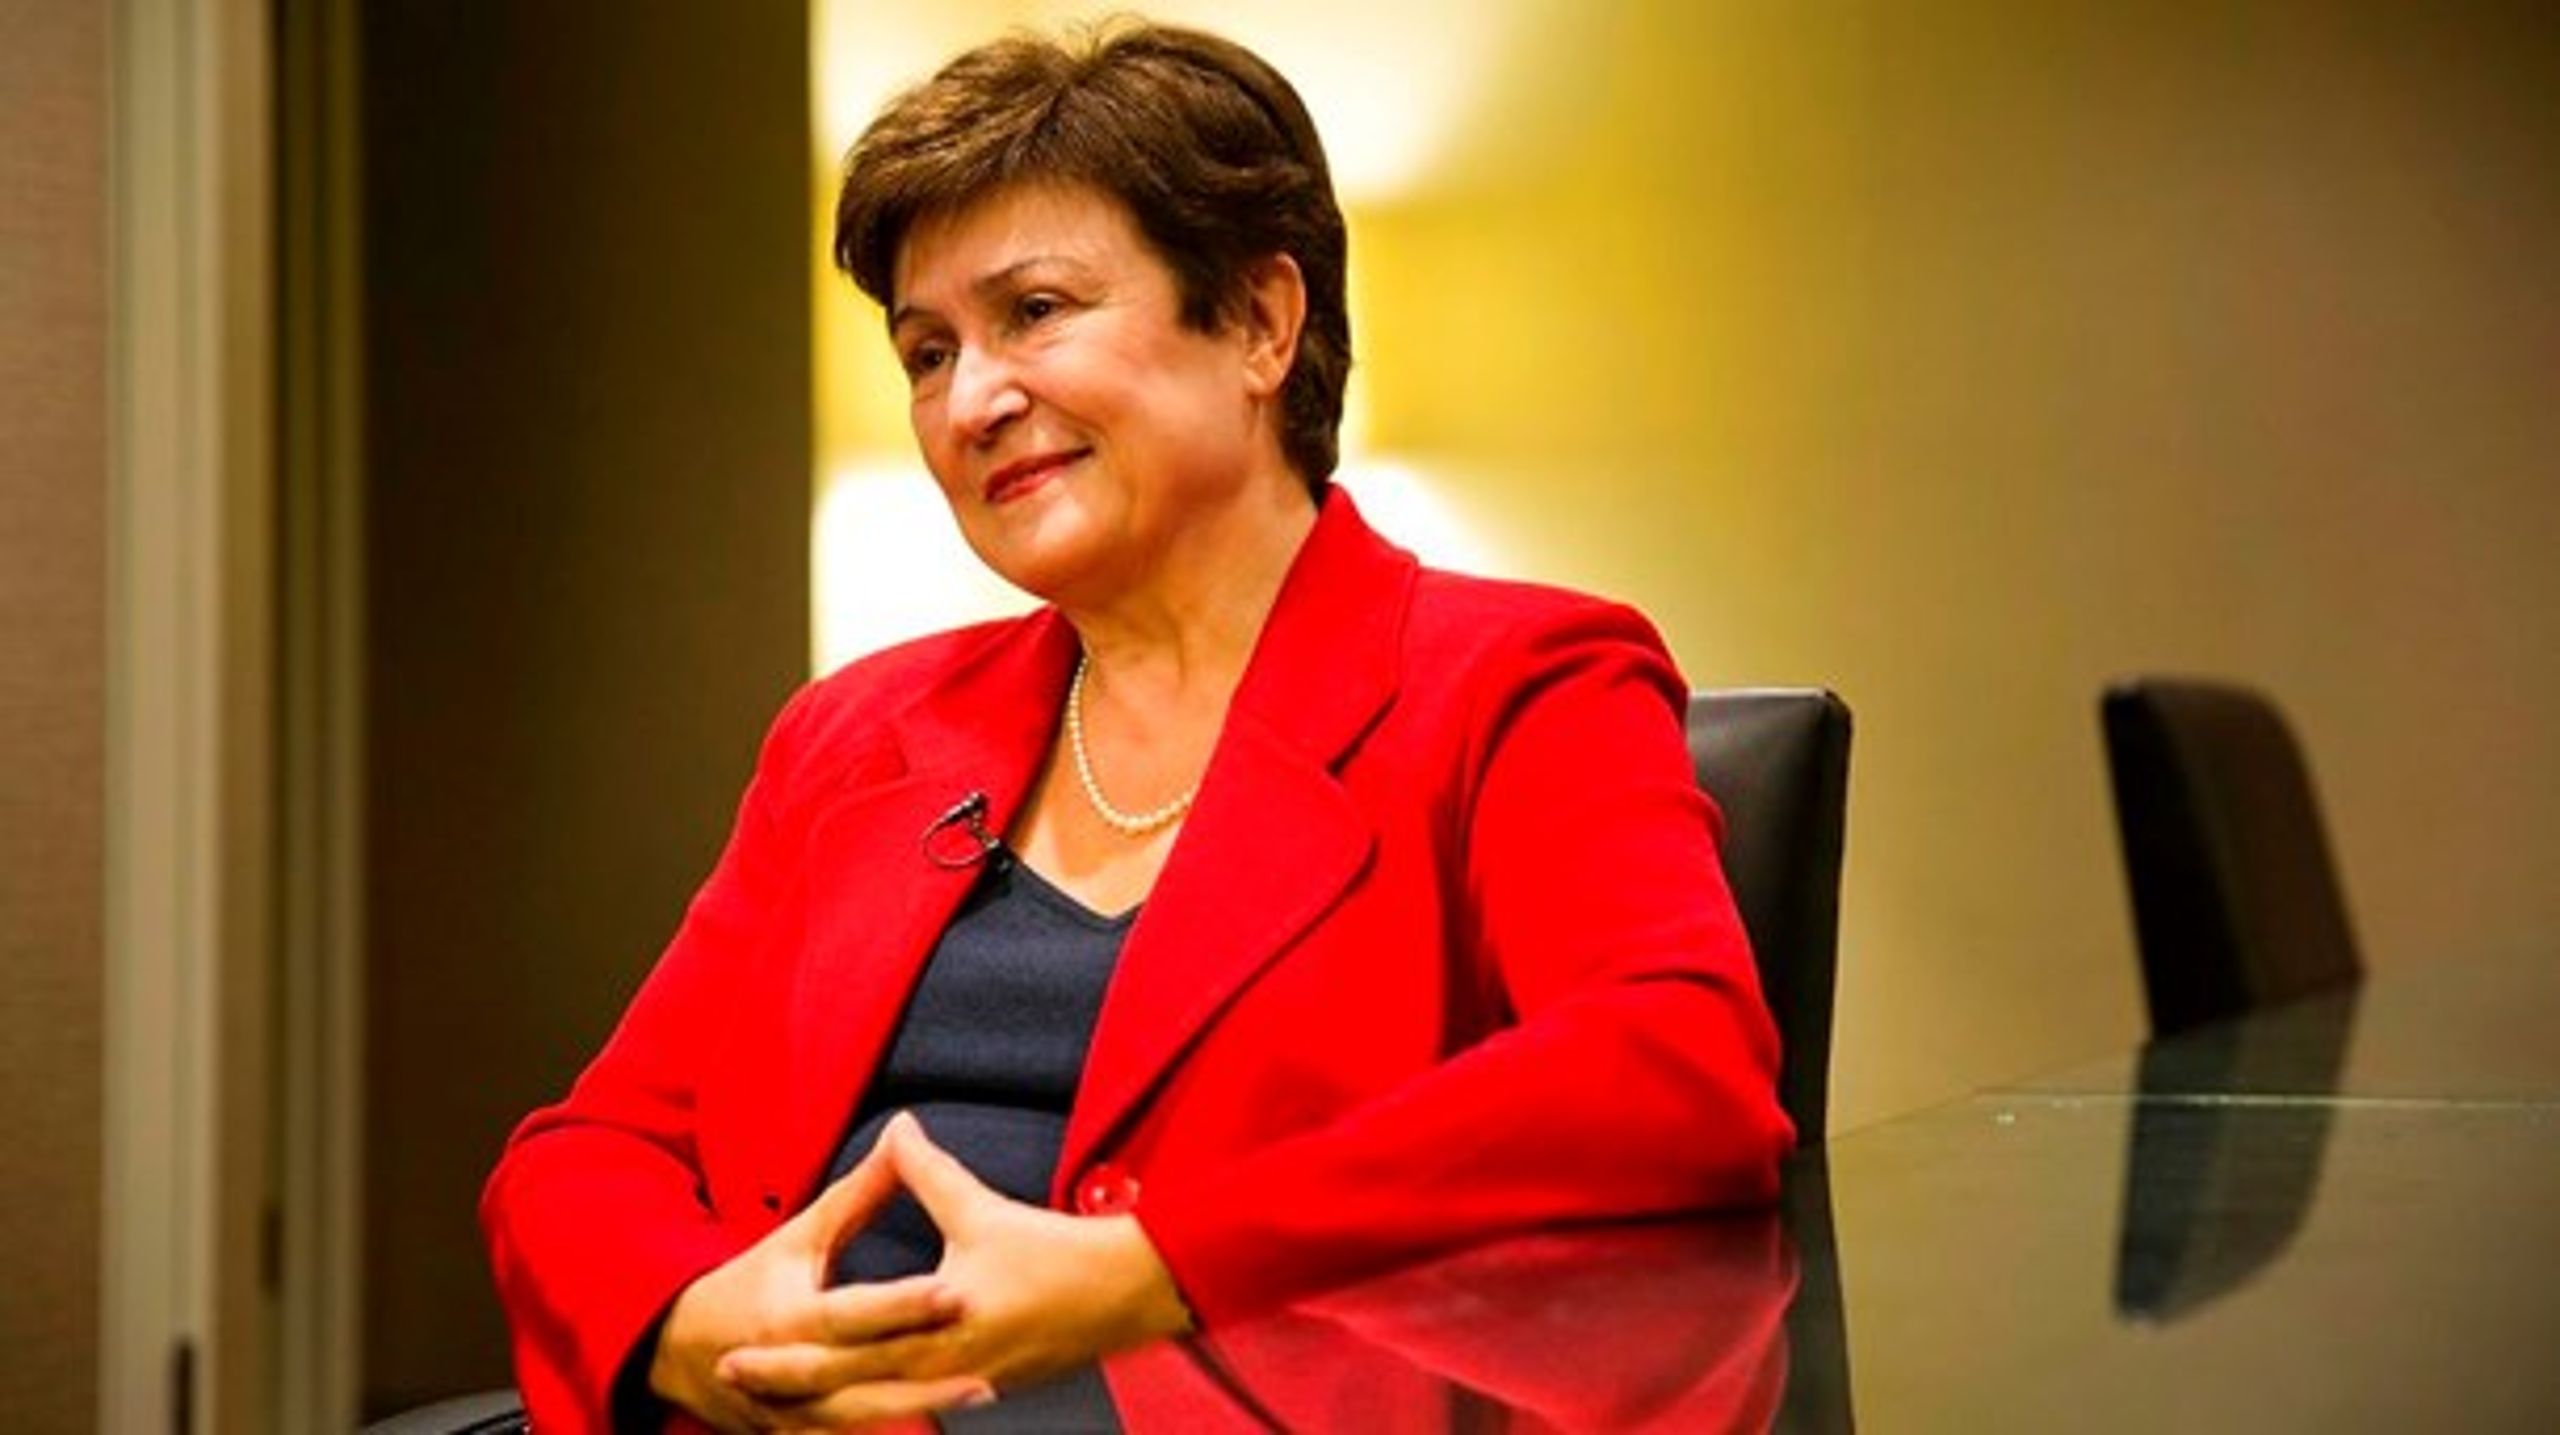 Bulgarske&nbsp;Kristalina Georgieva har tidligere siddet som vicepræsident i Verdensbanken, hvor hun nu skal være administerende direktør.